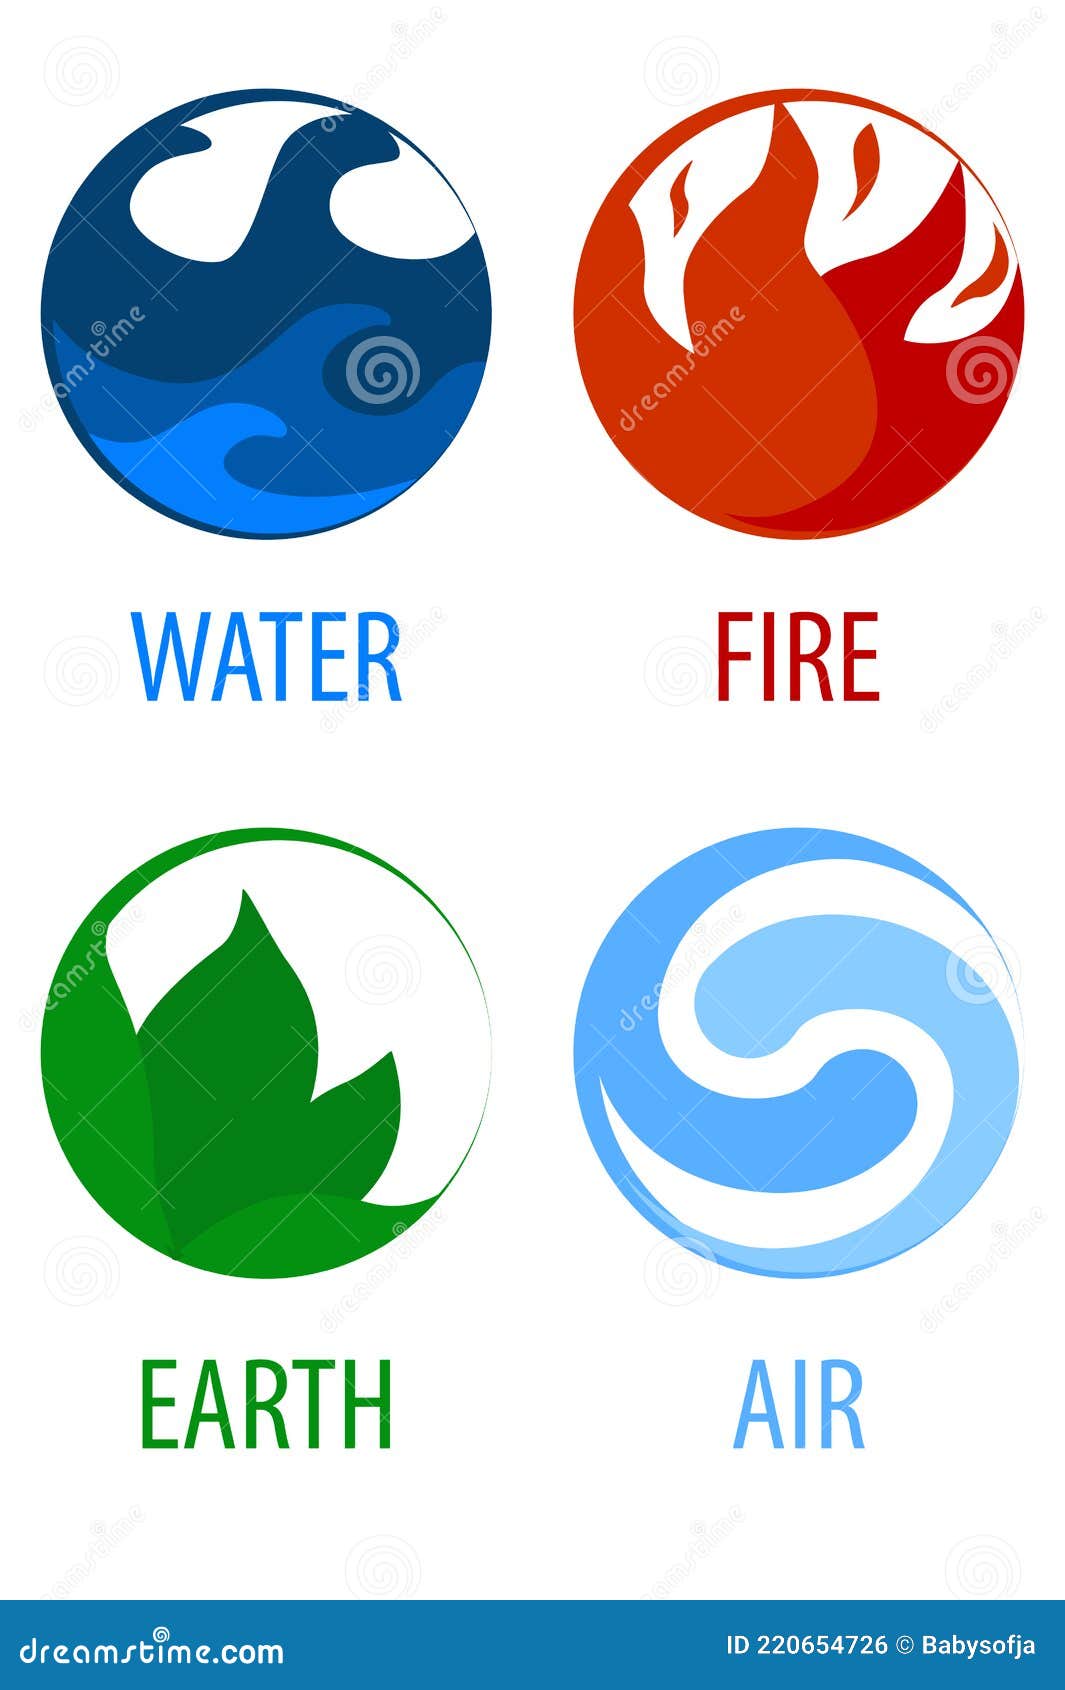 4 quadros - dos 4 elementos (Terra - Fogo - Agua - Ar)